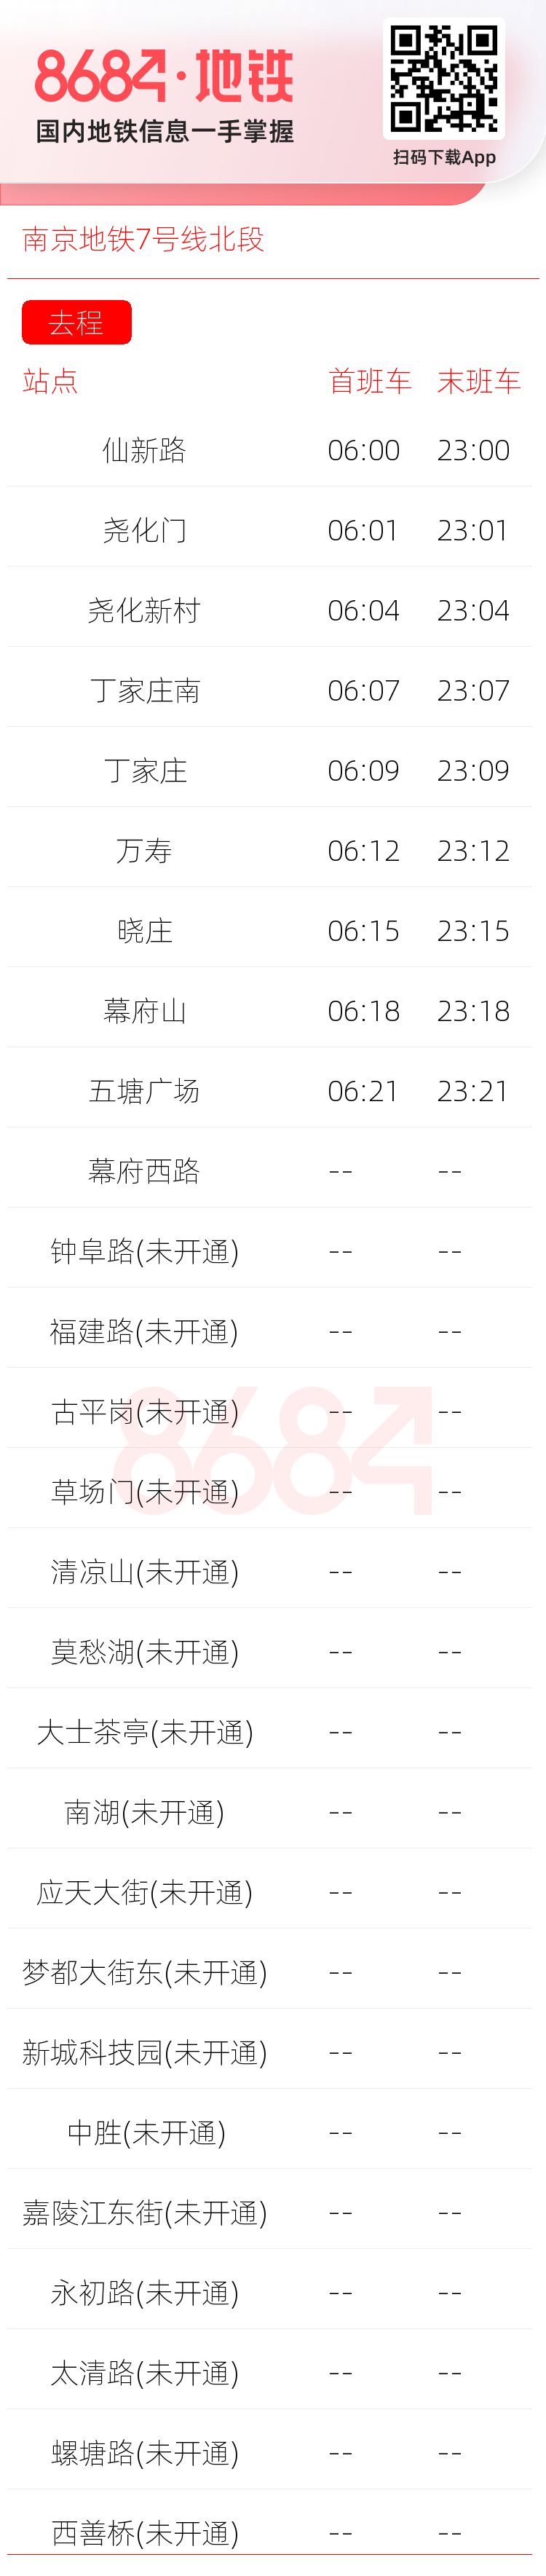 南京地铁7号线北段运营时间表